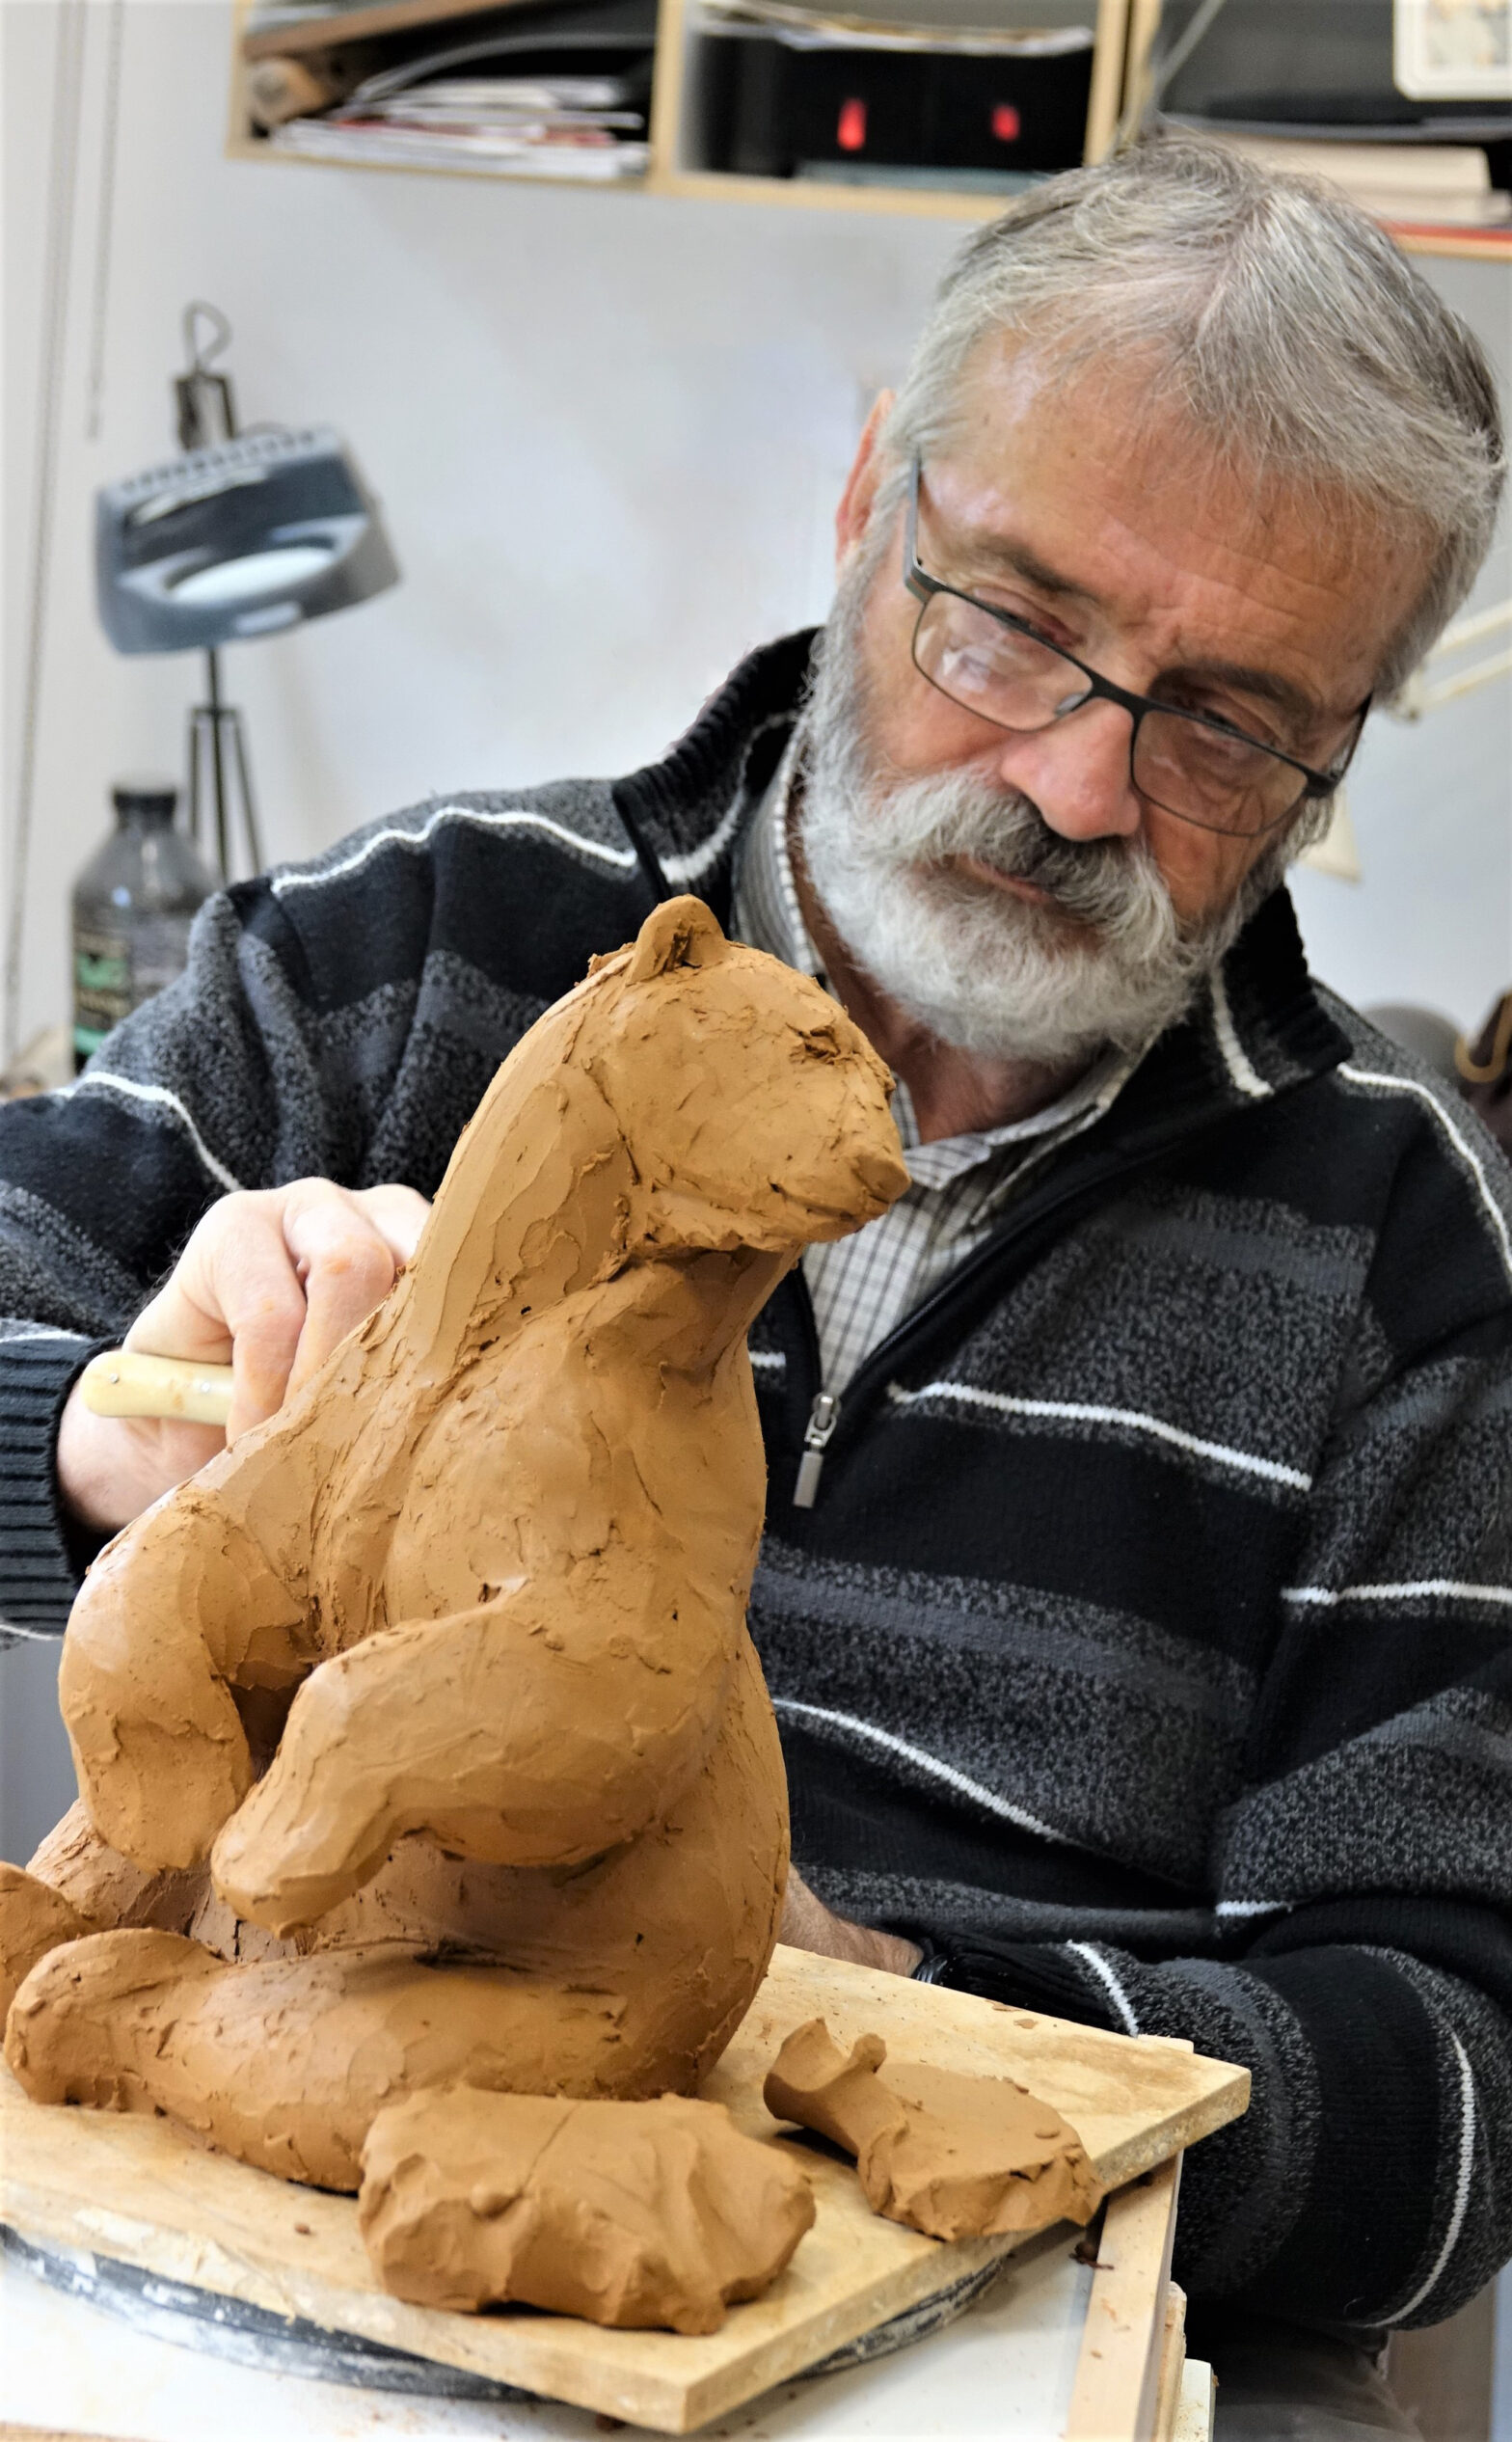 Photographie de Michel Bassompierre sculptant un ours en terre cuite.